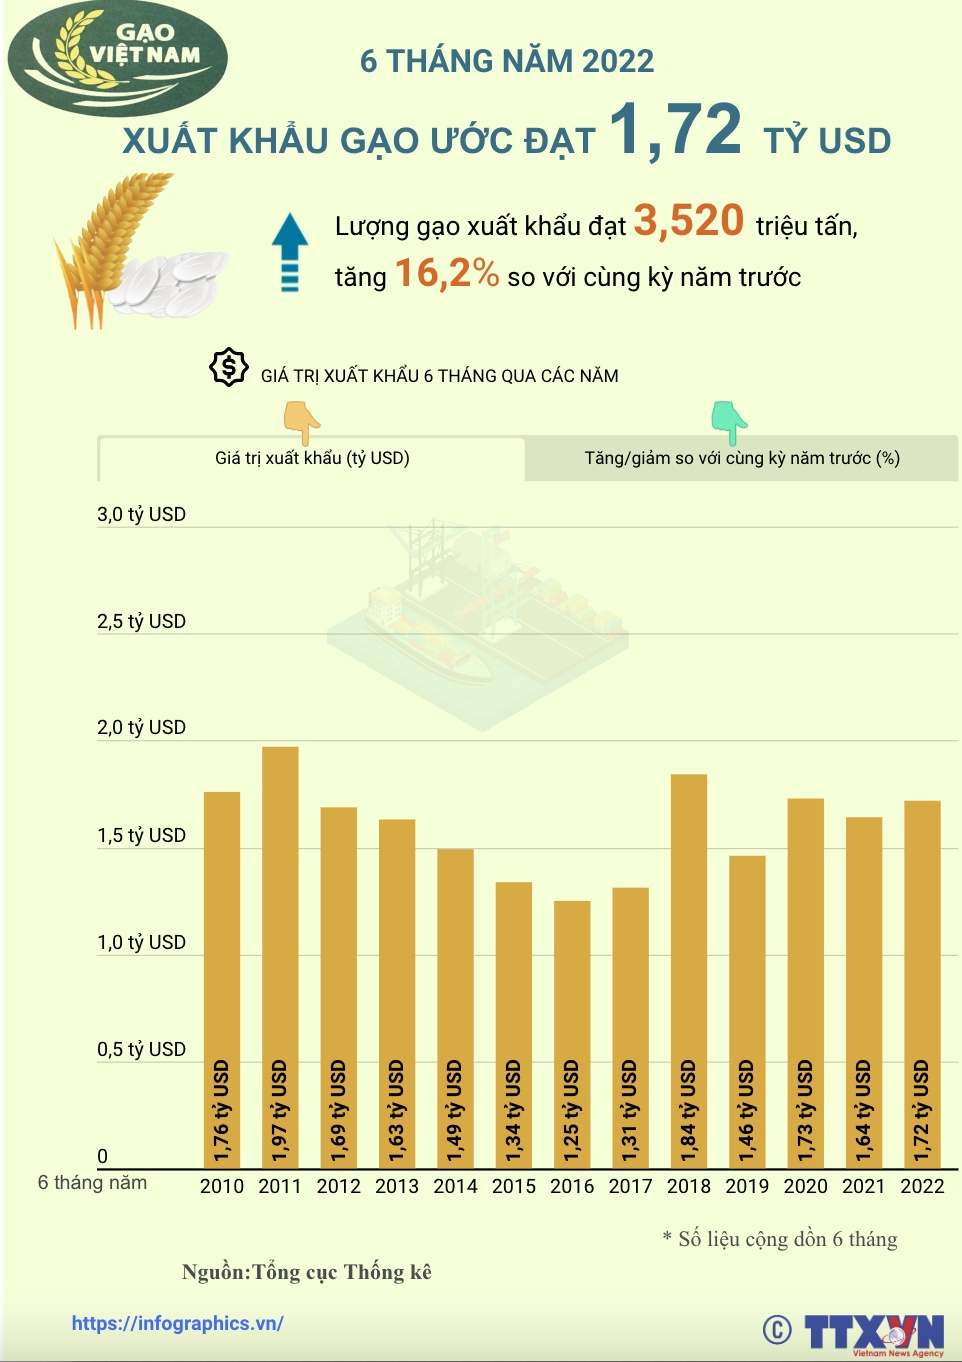 6 tháng năm 2022: Xuất khẩu gạo ước đạt 1,72 tỷ USD